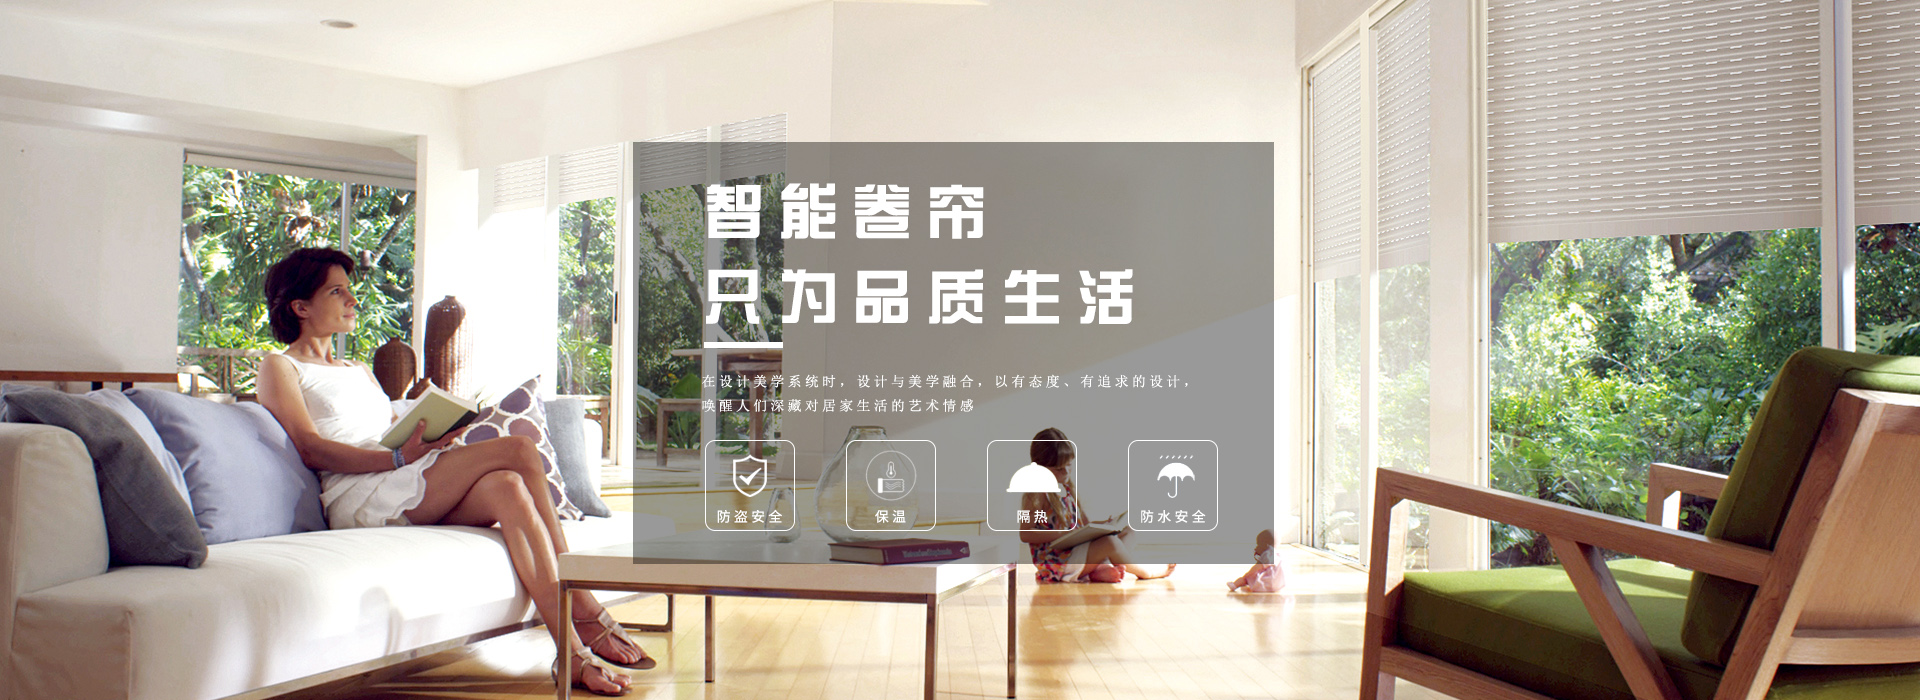 关于当前产品12博体育平台·(中国)官方网站的成功案例等相关图片